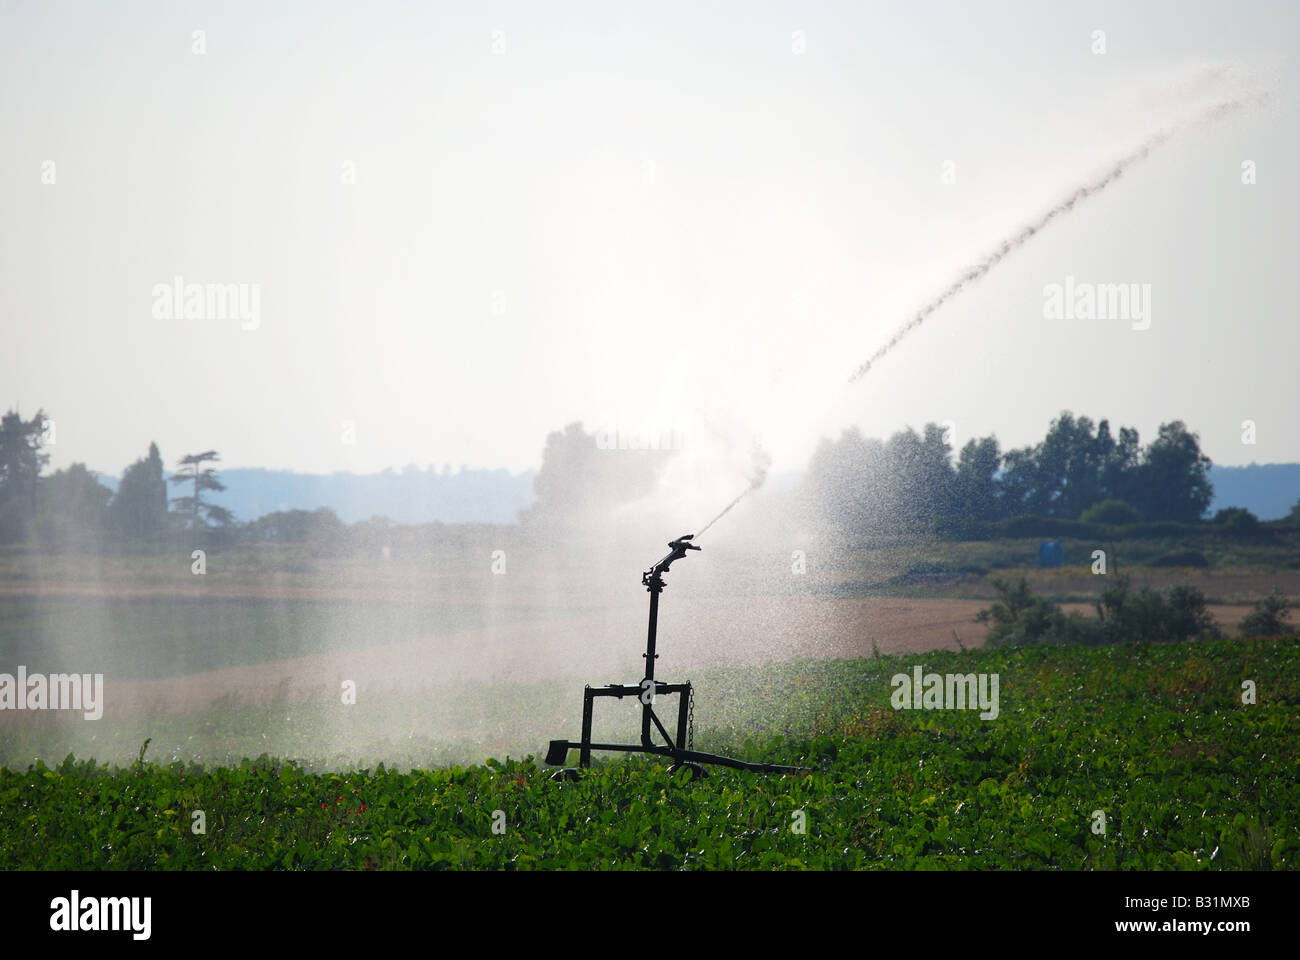 Acqua irrigua sprinkler nel campo, Mistley, Tendring District, Essex, Inghilterra, Regno Unito Foto Stock